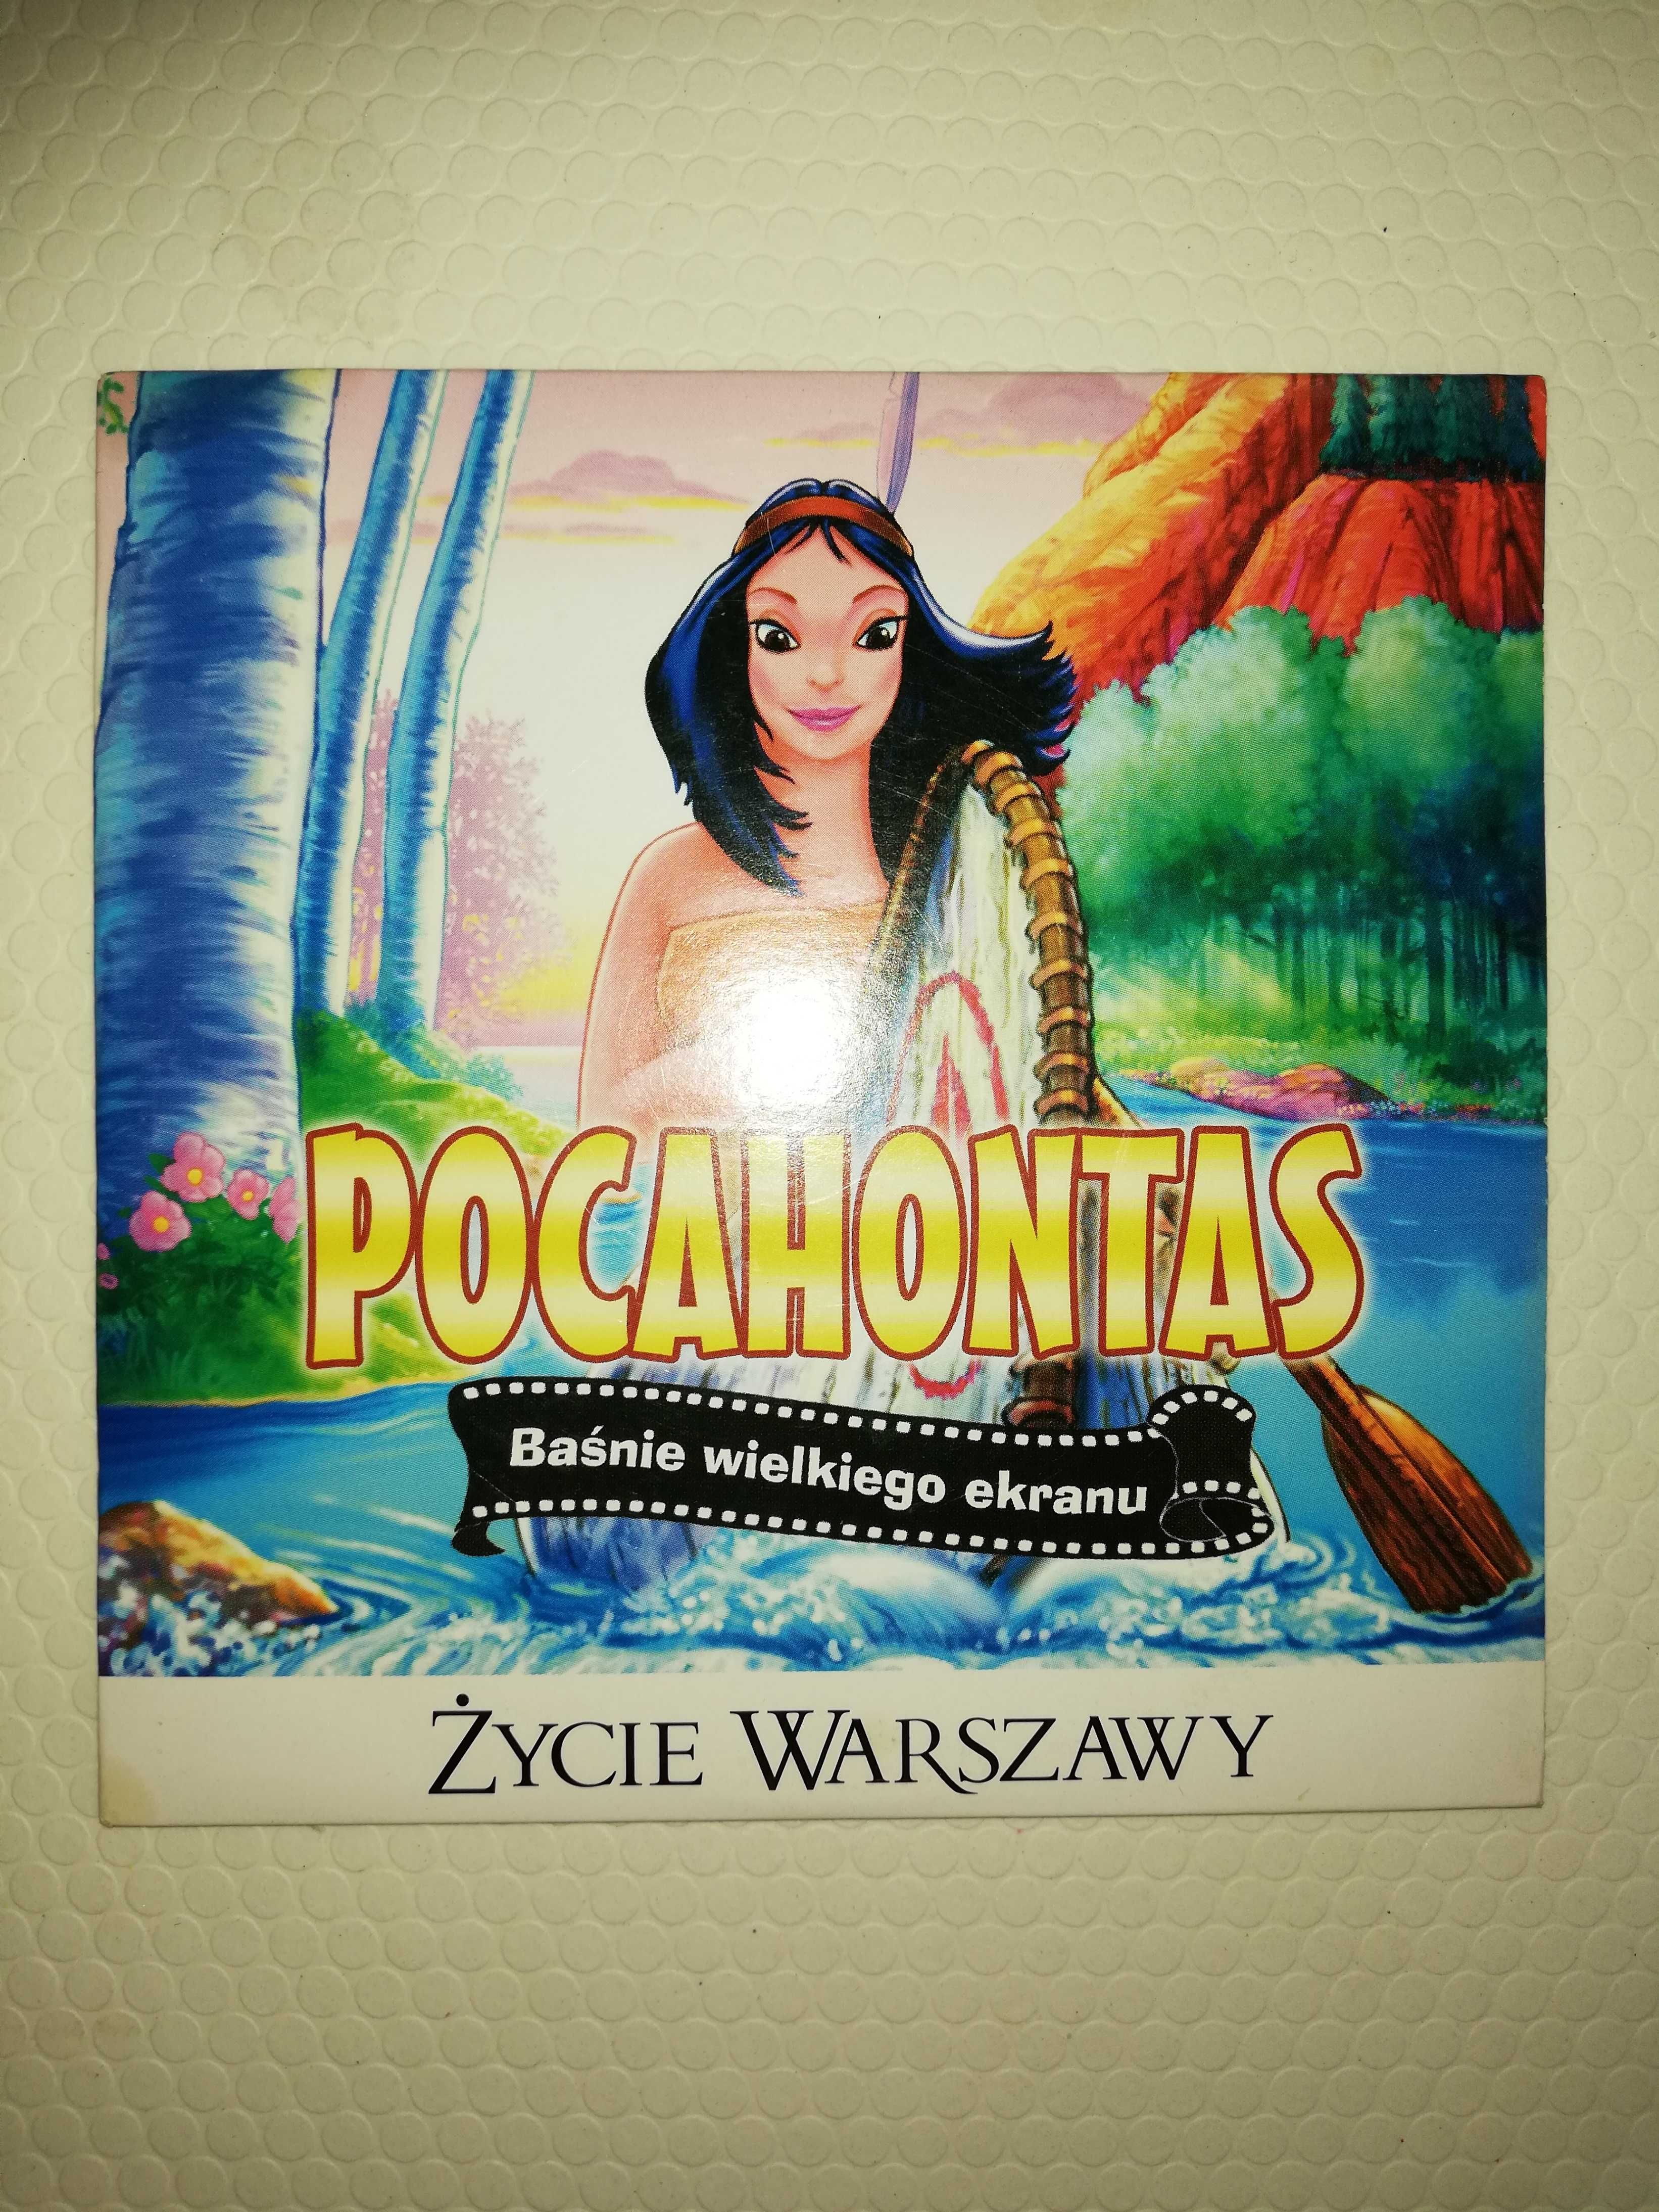 Film DVD/VCD - Pocahontas - Baśnie wielkiego ekranu